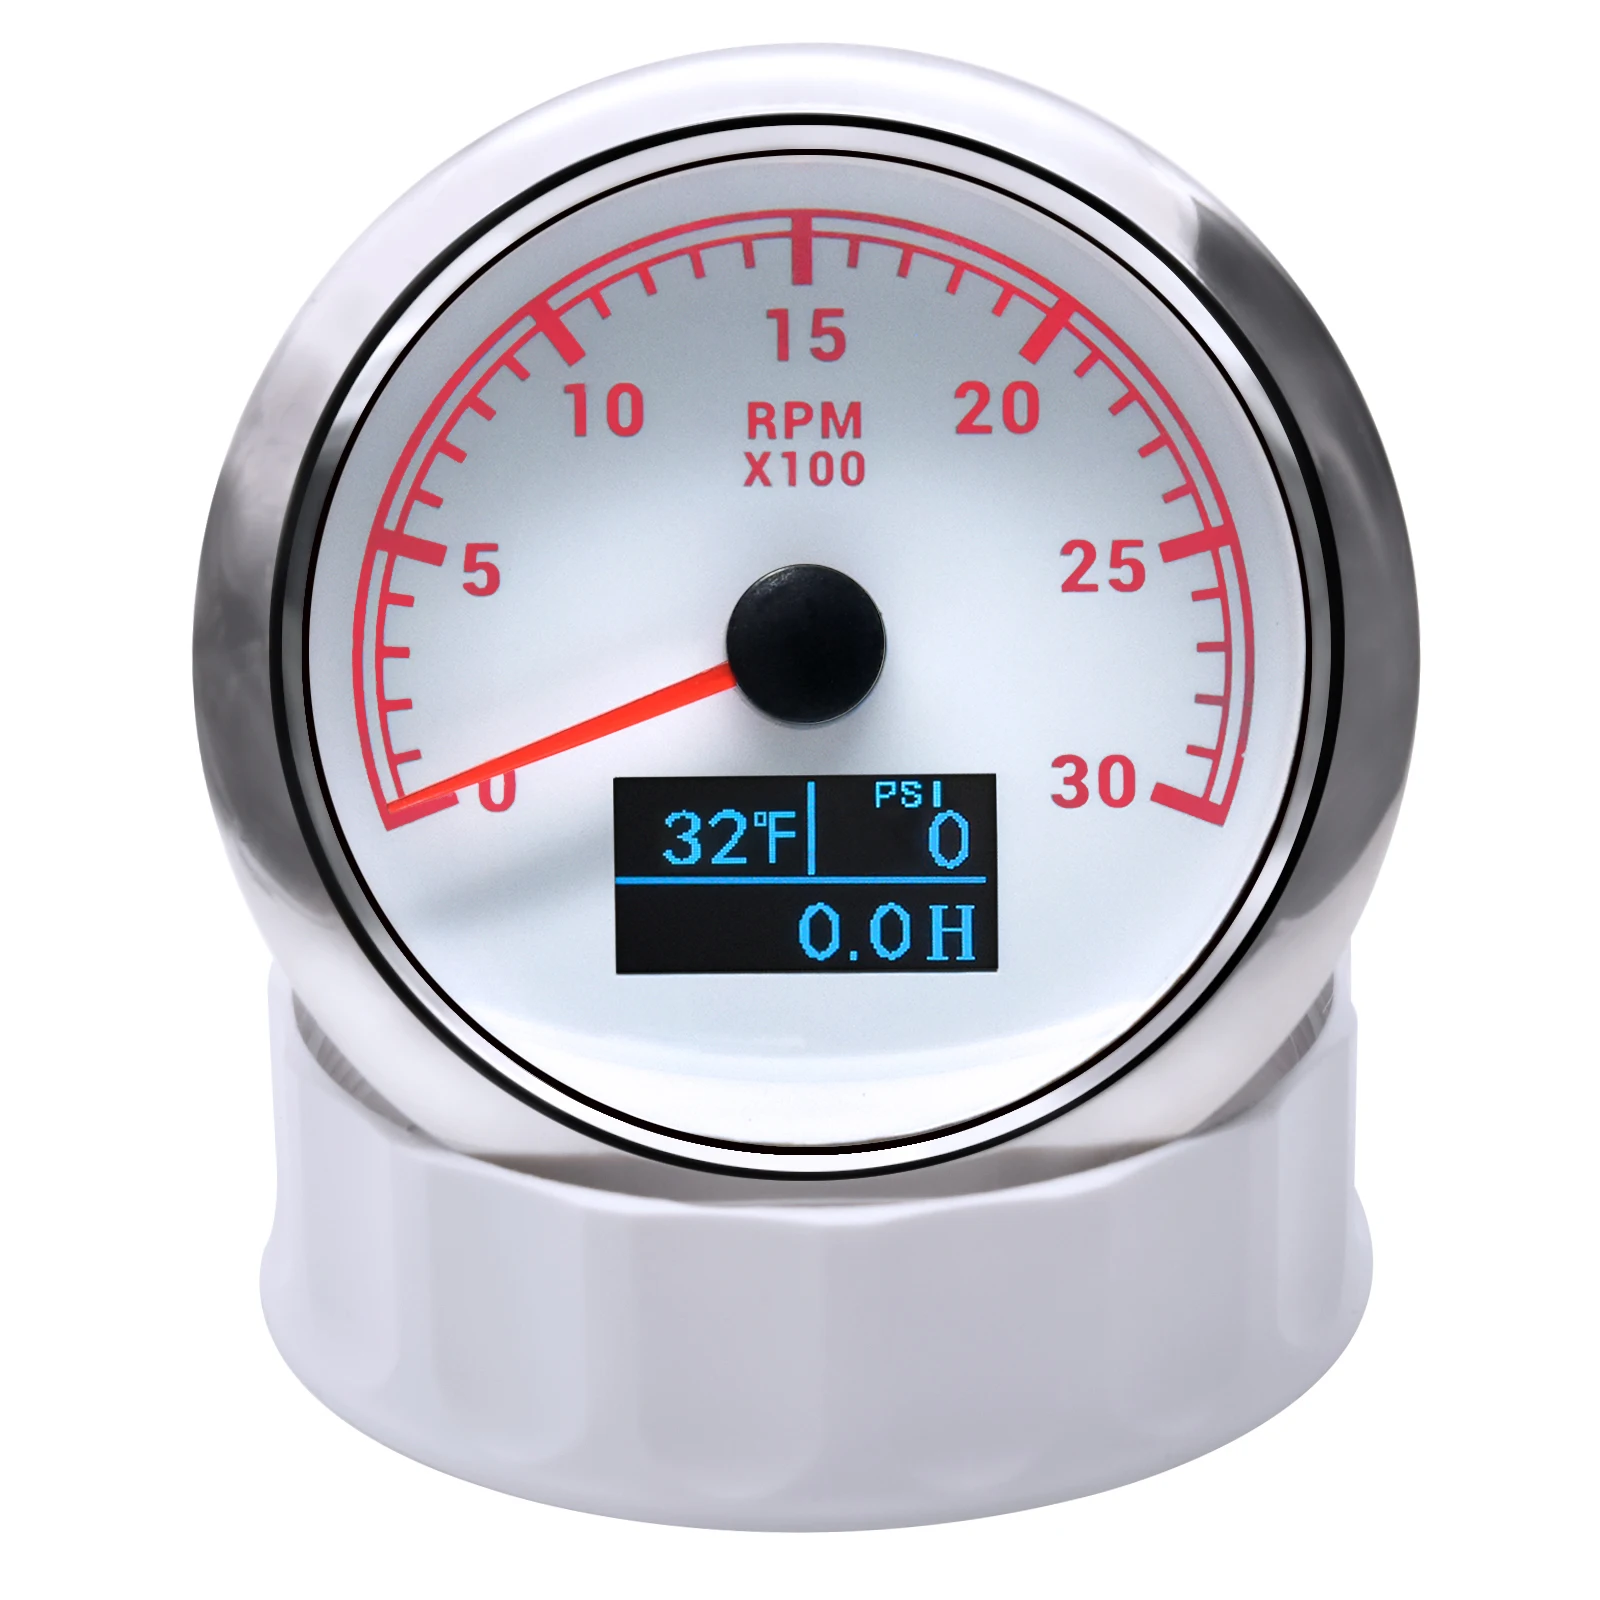 KUS-Jauge de tachymètre avec rétroéclairage pour voiture, compteur horaire,  0-3000 RPM, 0-4000RPM, 0-6000 RPM, 0-8000 RPM, 12V, 24V, 85mm - AliExpress